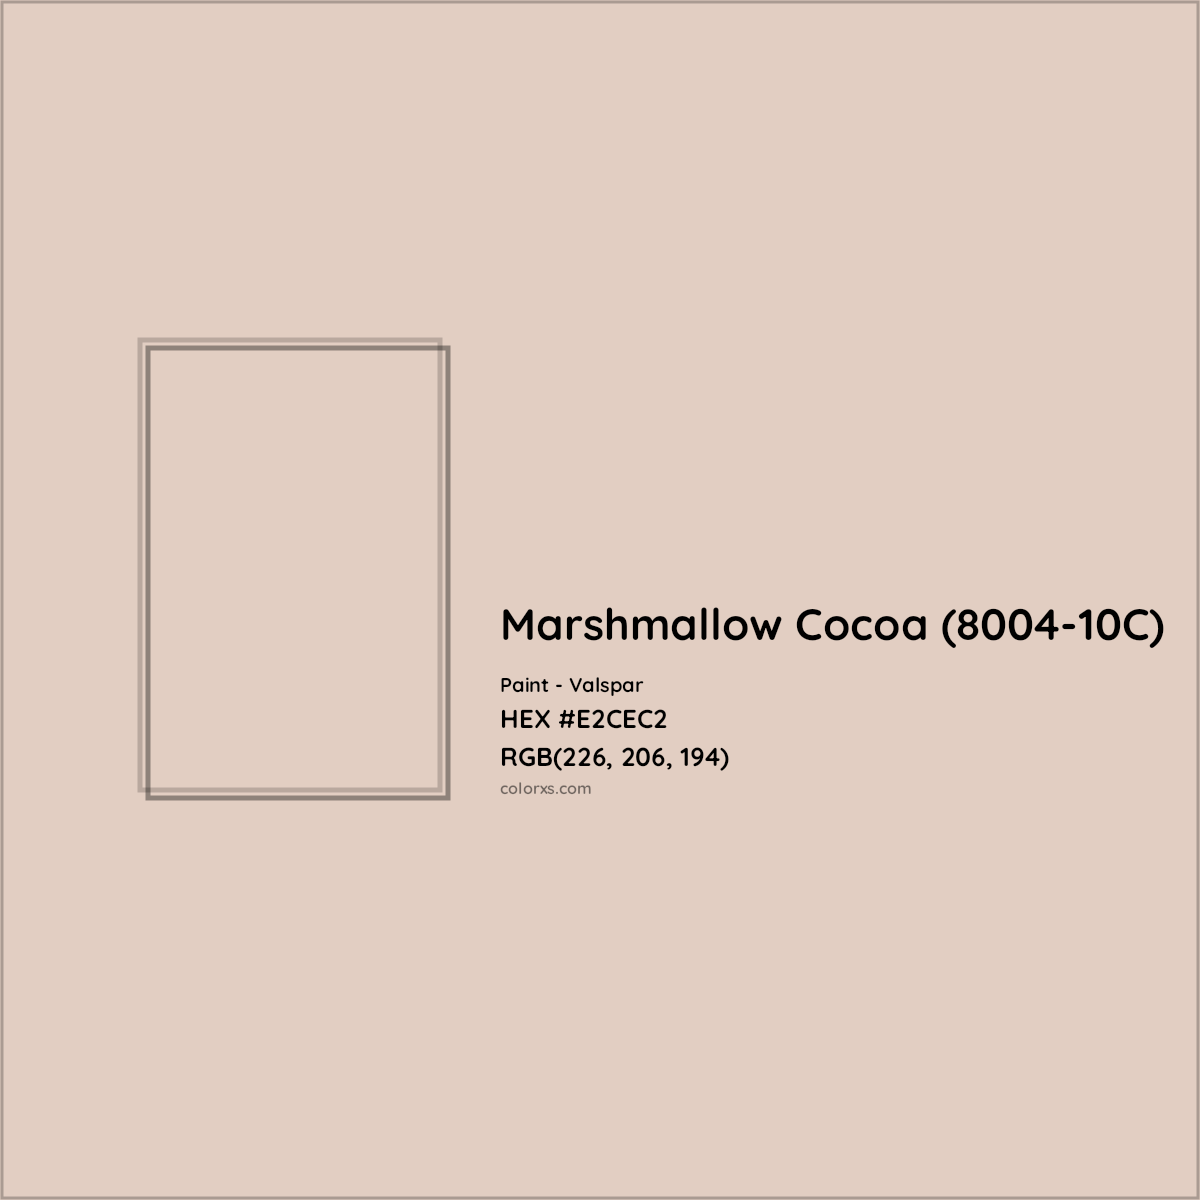 HEX #E2CEC2 Marshmallow Cocoa (8004-10C) Paint Valspar - Color Code